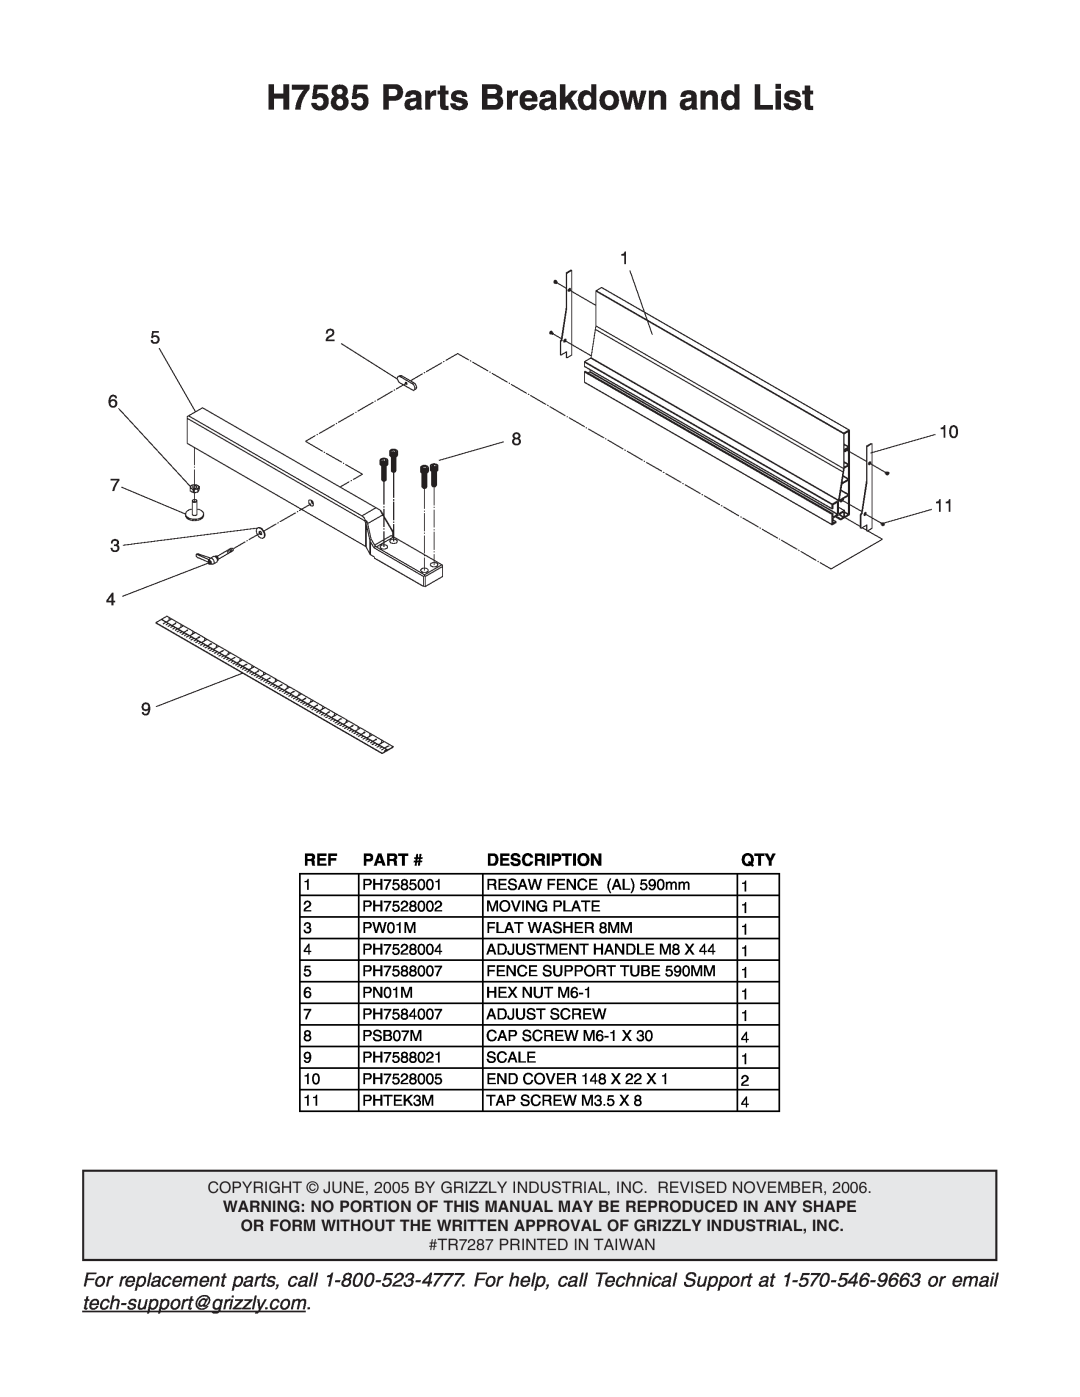 Grizzly instruction sheet H7585 Parts Breakdown and List, Part #, Description 